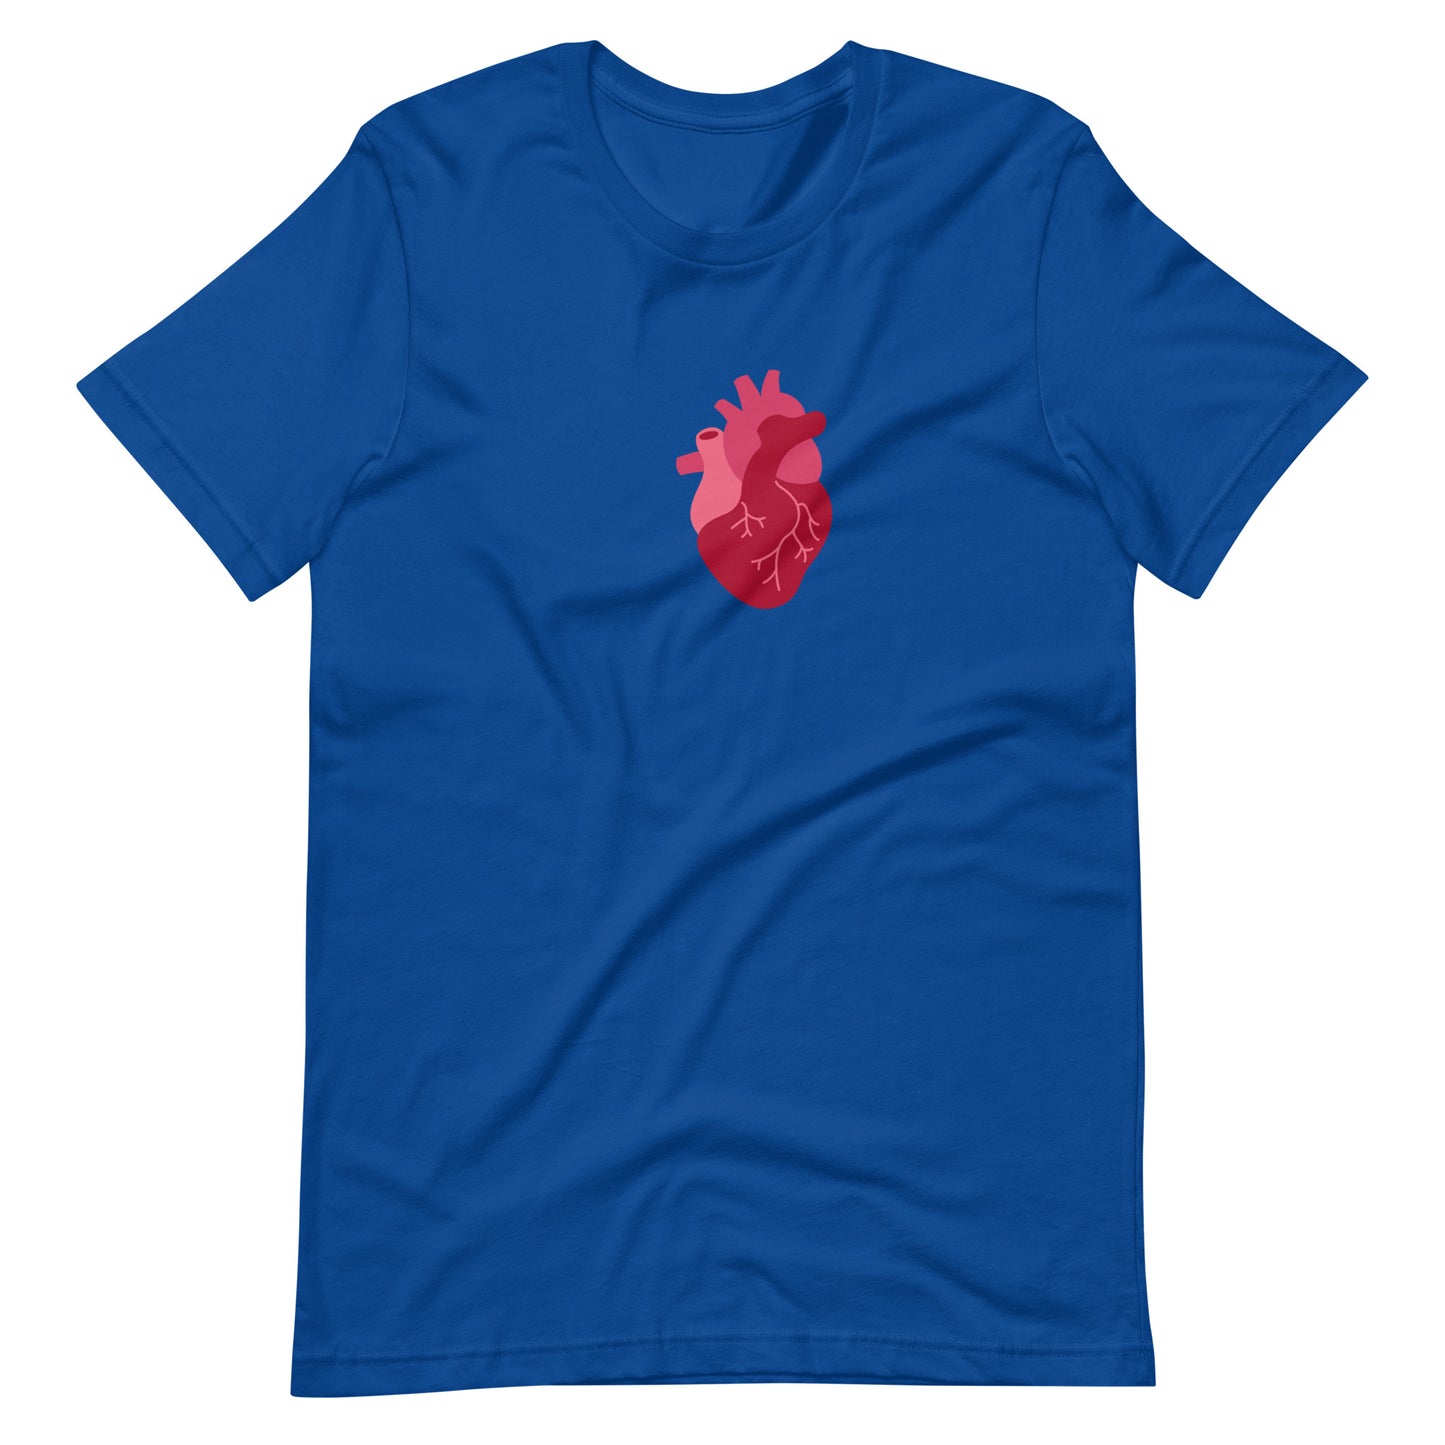 Anatomy, Heart, Cardiology, Cardiologist, EKG, Doctor, Medical Student, Resident, Nurse, Hospital, Cardiac, Cardiology, Funny Doctor Shirt